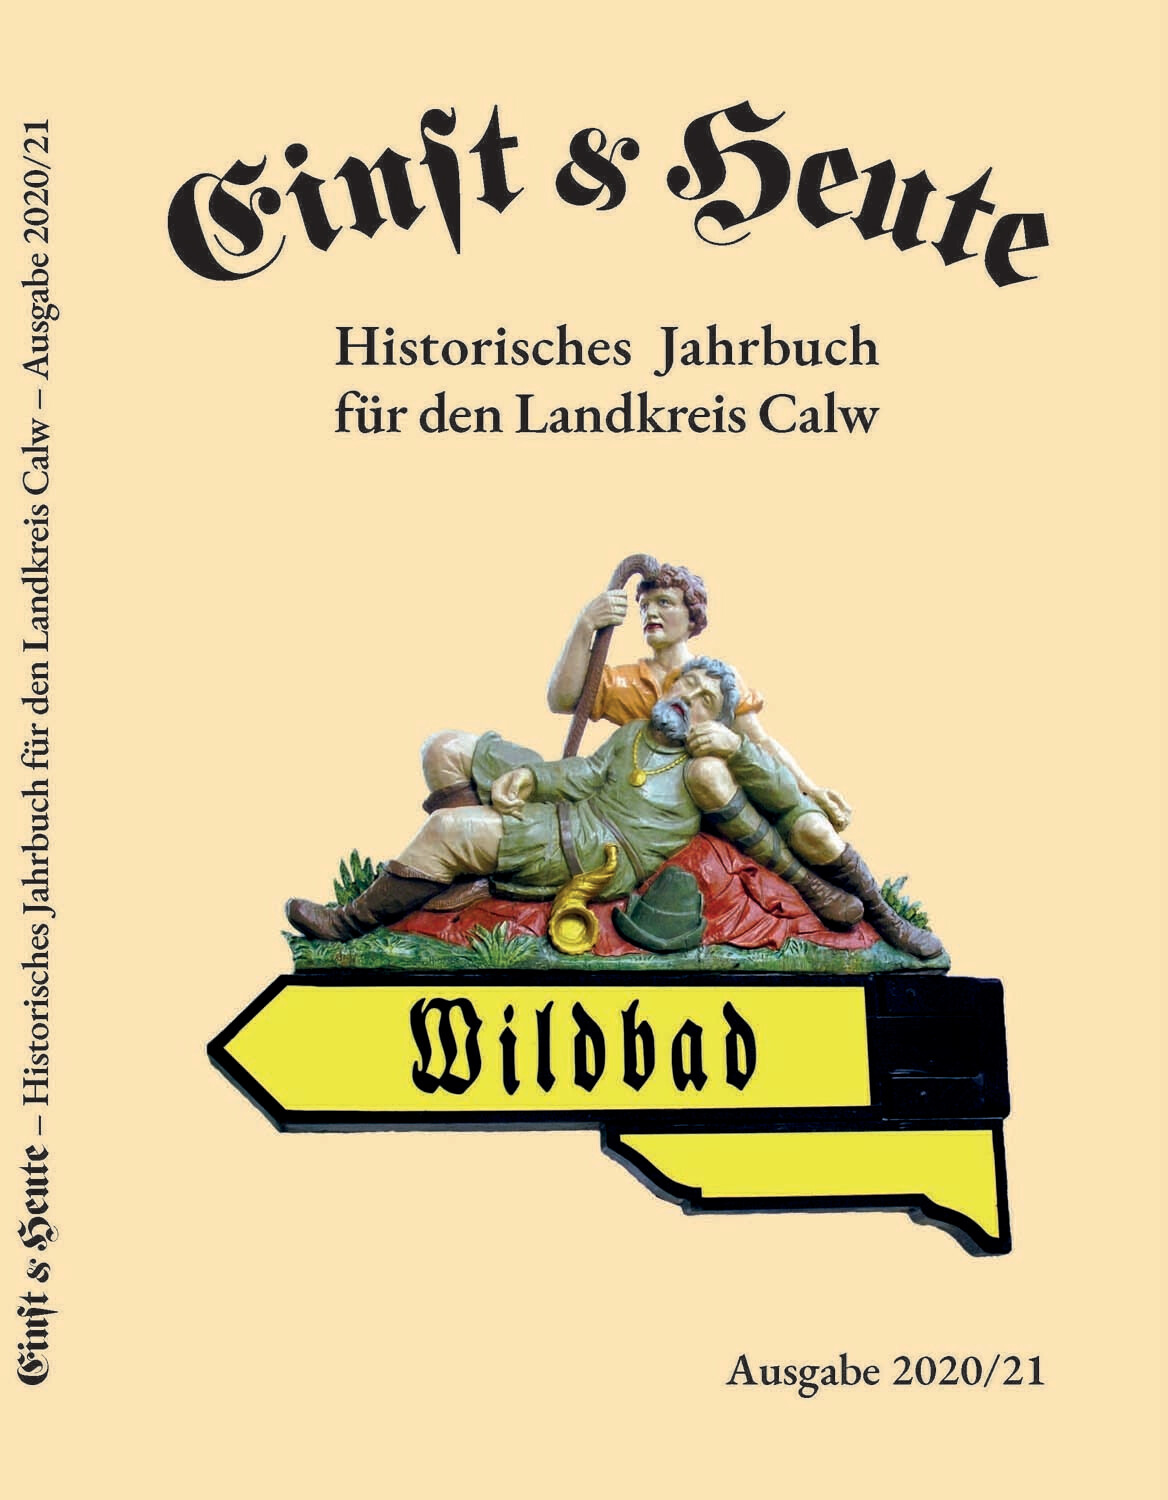 Einst & Heute. Historisches Jahrbuch für den Landkreis Calw.